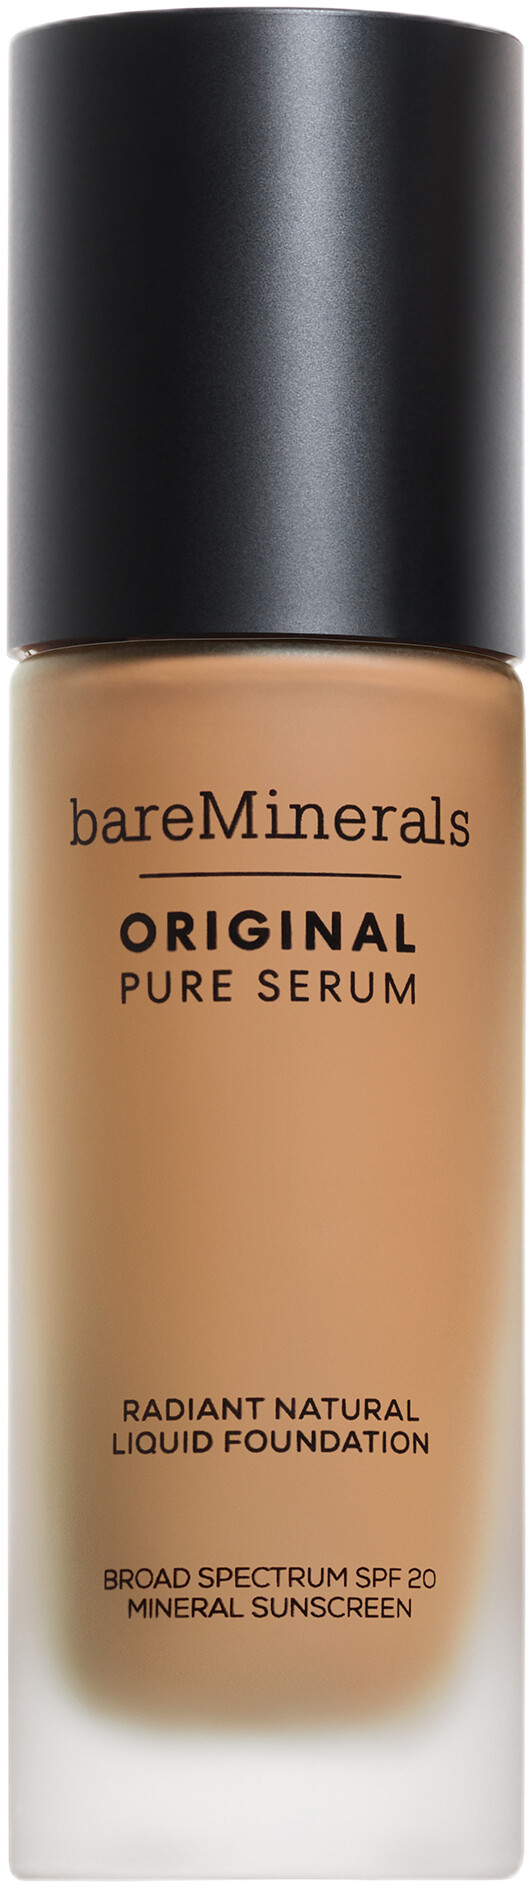 bareMinerals Original Pure Serum Radiant Natural Liquid Foundation SPF20 30ml 3 - Medium Warm